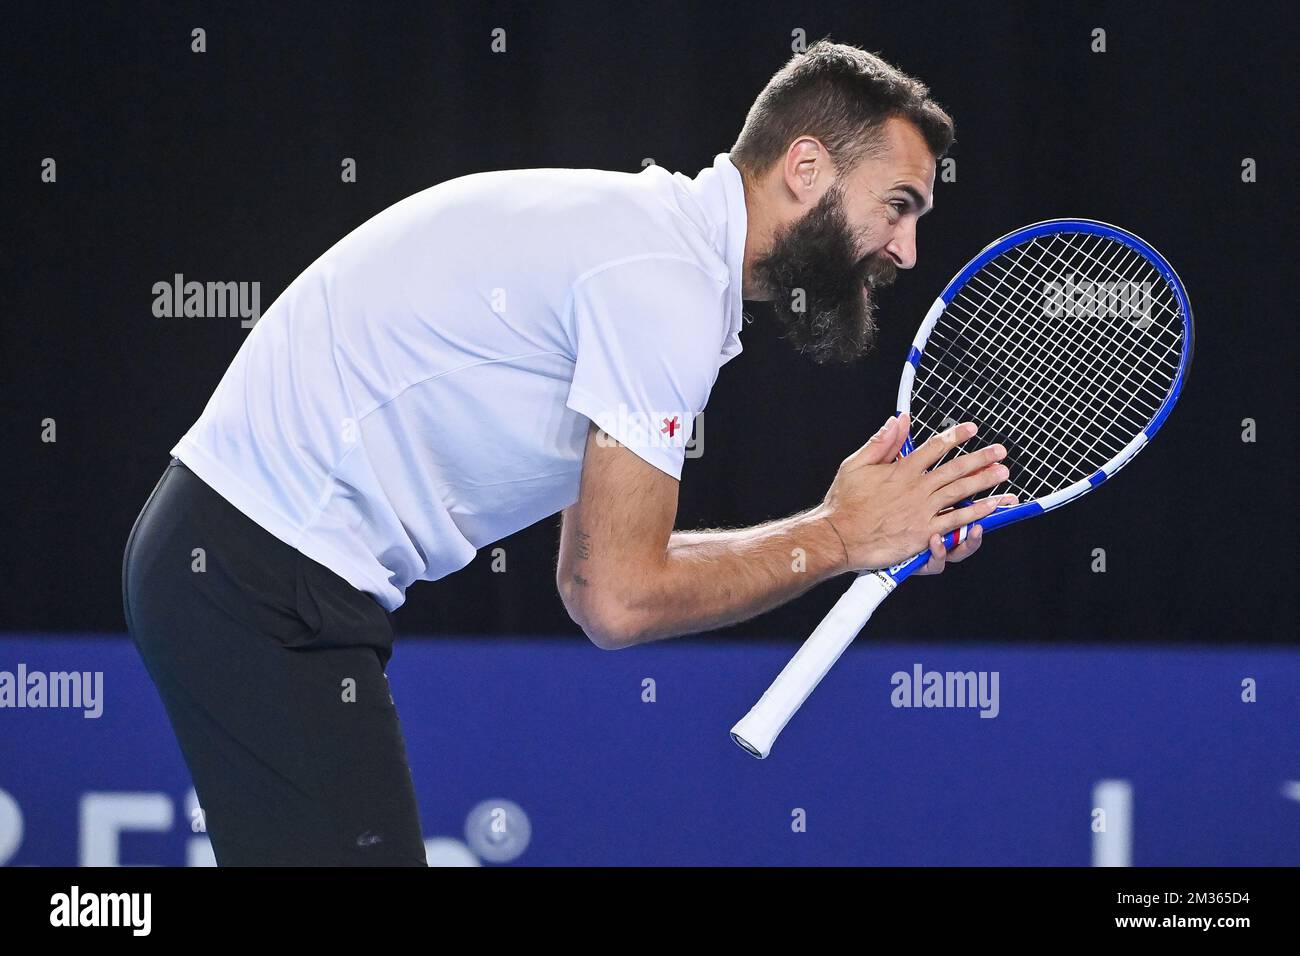 El francés Benoit Paire parece abatido durante un encuentro entre la pareja  italiano-francesa Musetti-Paire y la estadounidense Monroe-Opelka, en la  primera ronda del torneo Abierto Europeo de Tenis ATP, en Amberes, el